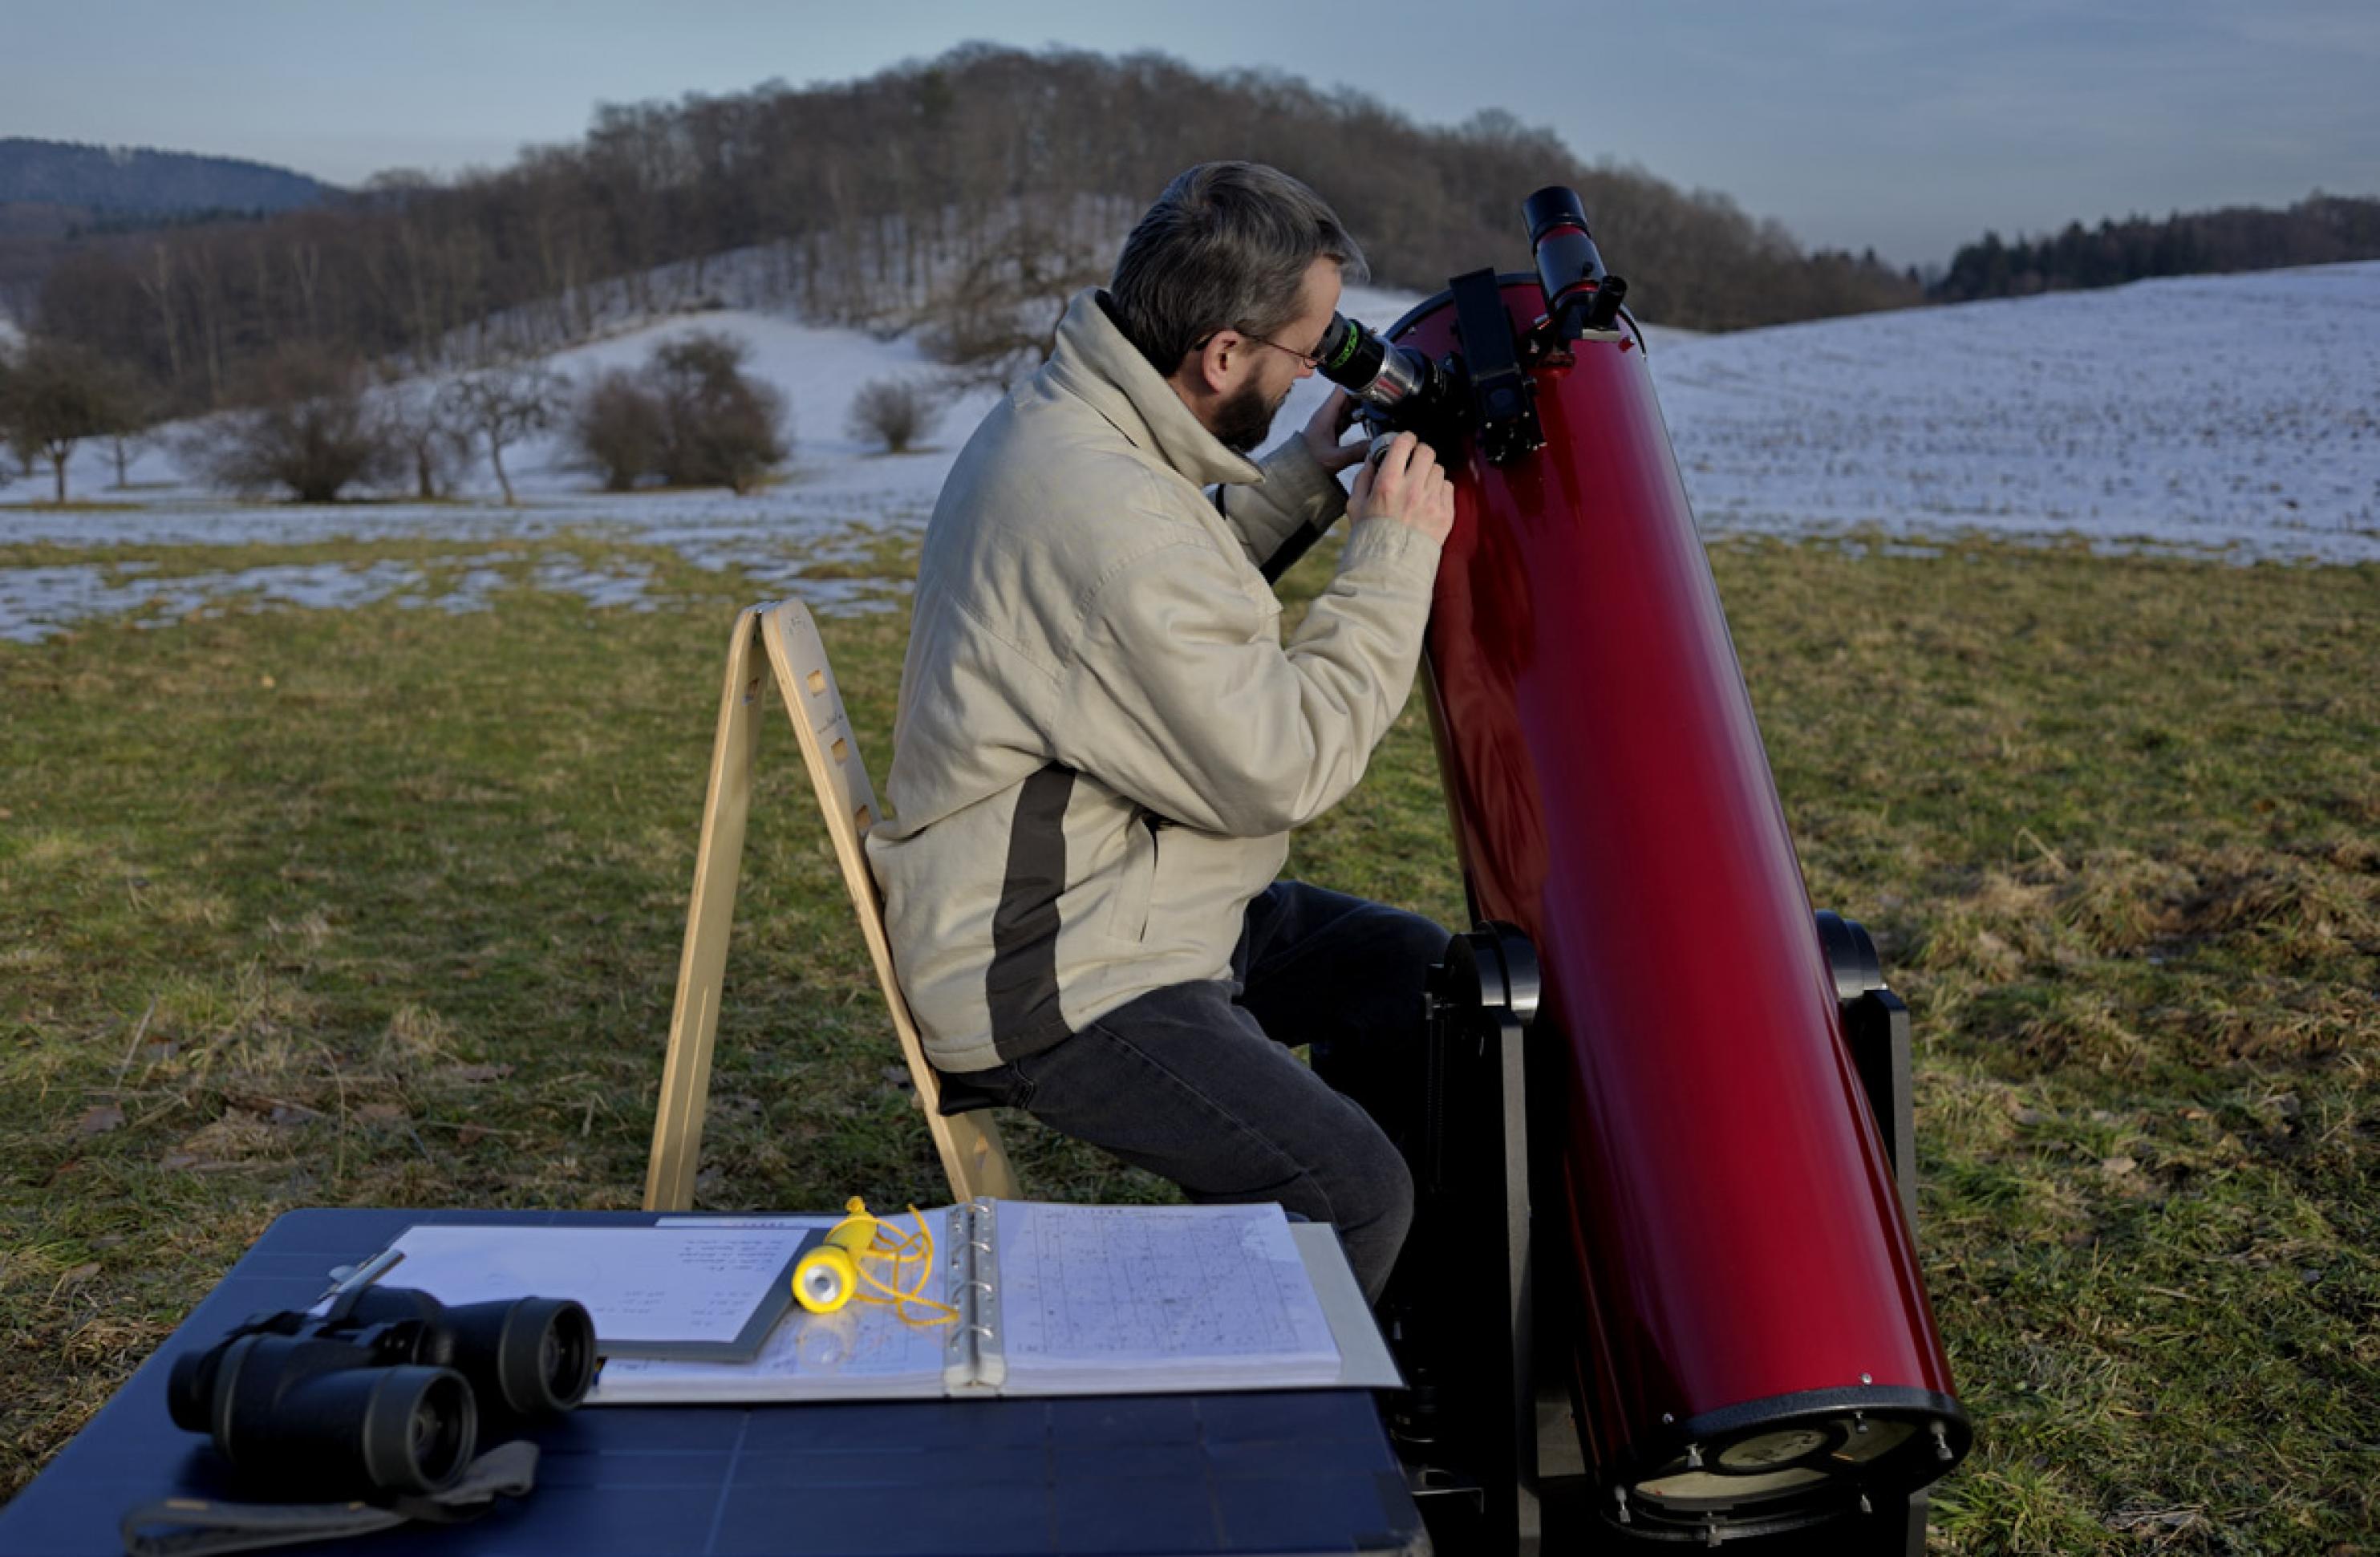 Himmels-Beobachter mit Dobson-Teleskop. Sterngucken ist ein Naturerlebnis der besonderen Art.